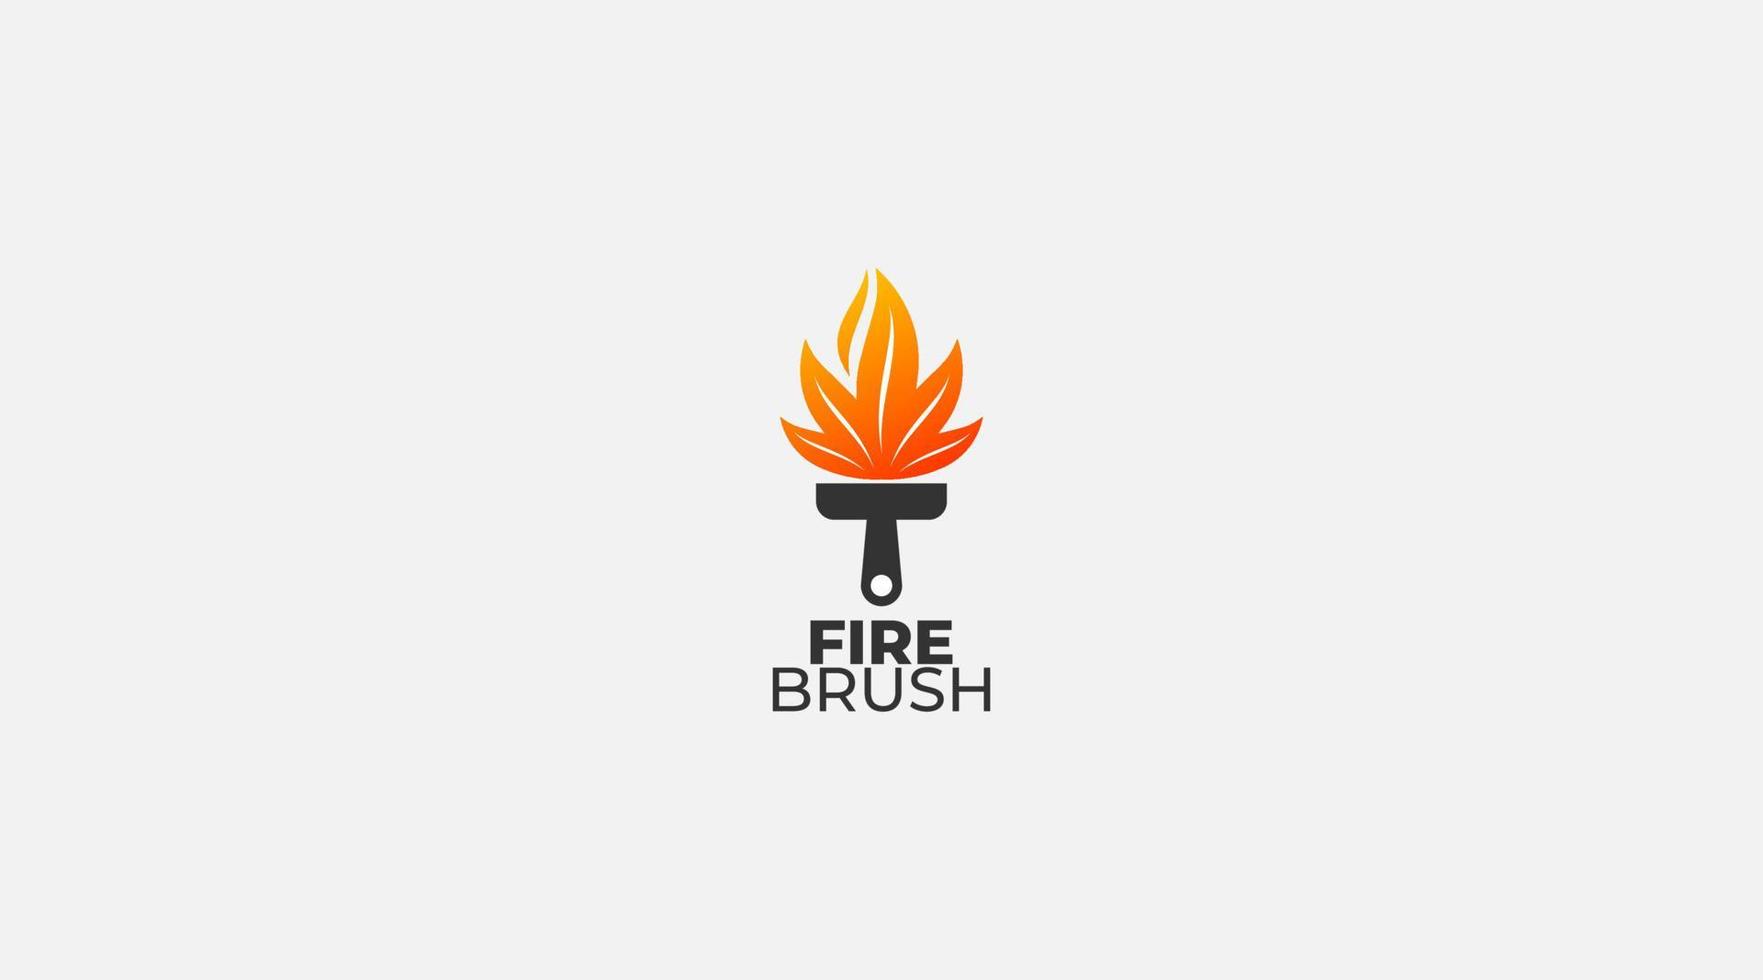 Fire Brush Logo Design Template illustration vector